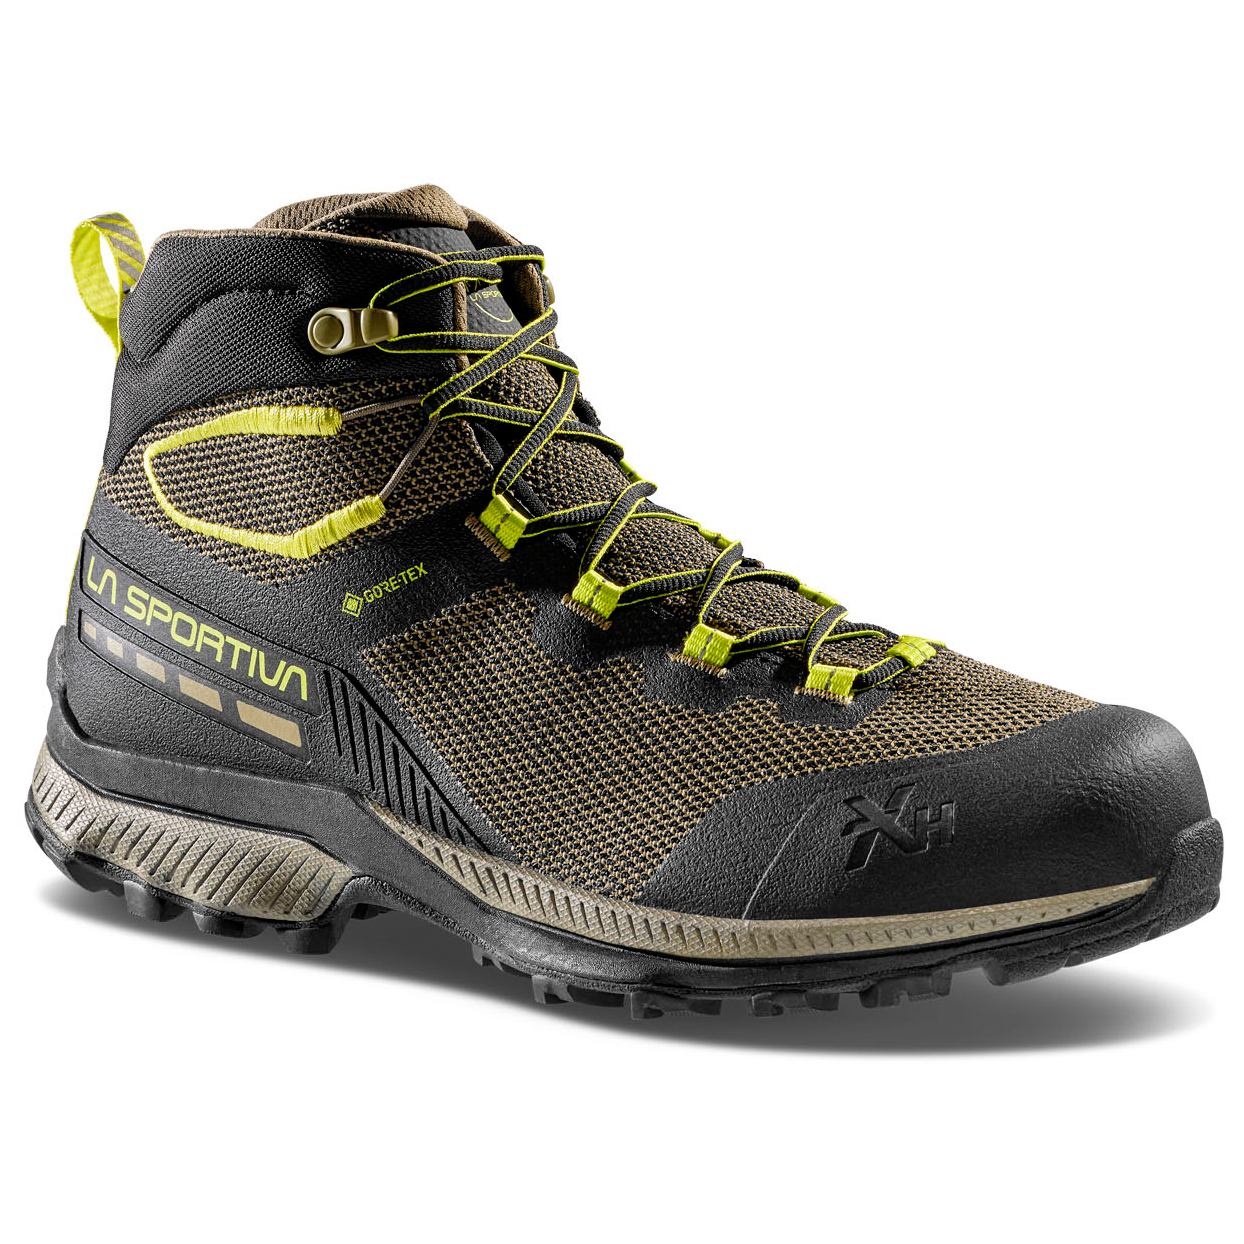 Ботинки для прогулки La Sportiva TX Hike Mid GTX, цвет Black/Lime Punch обувь tx canyon мужская la sportiva черный желтый